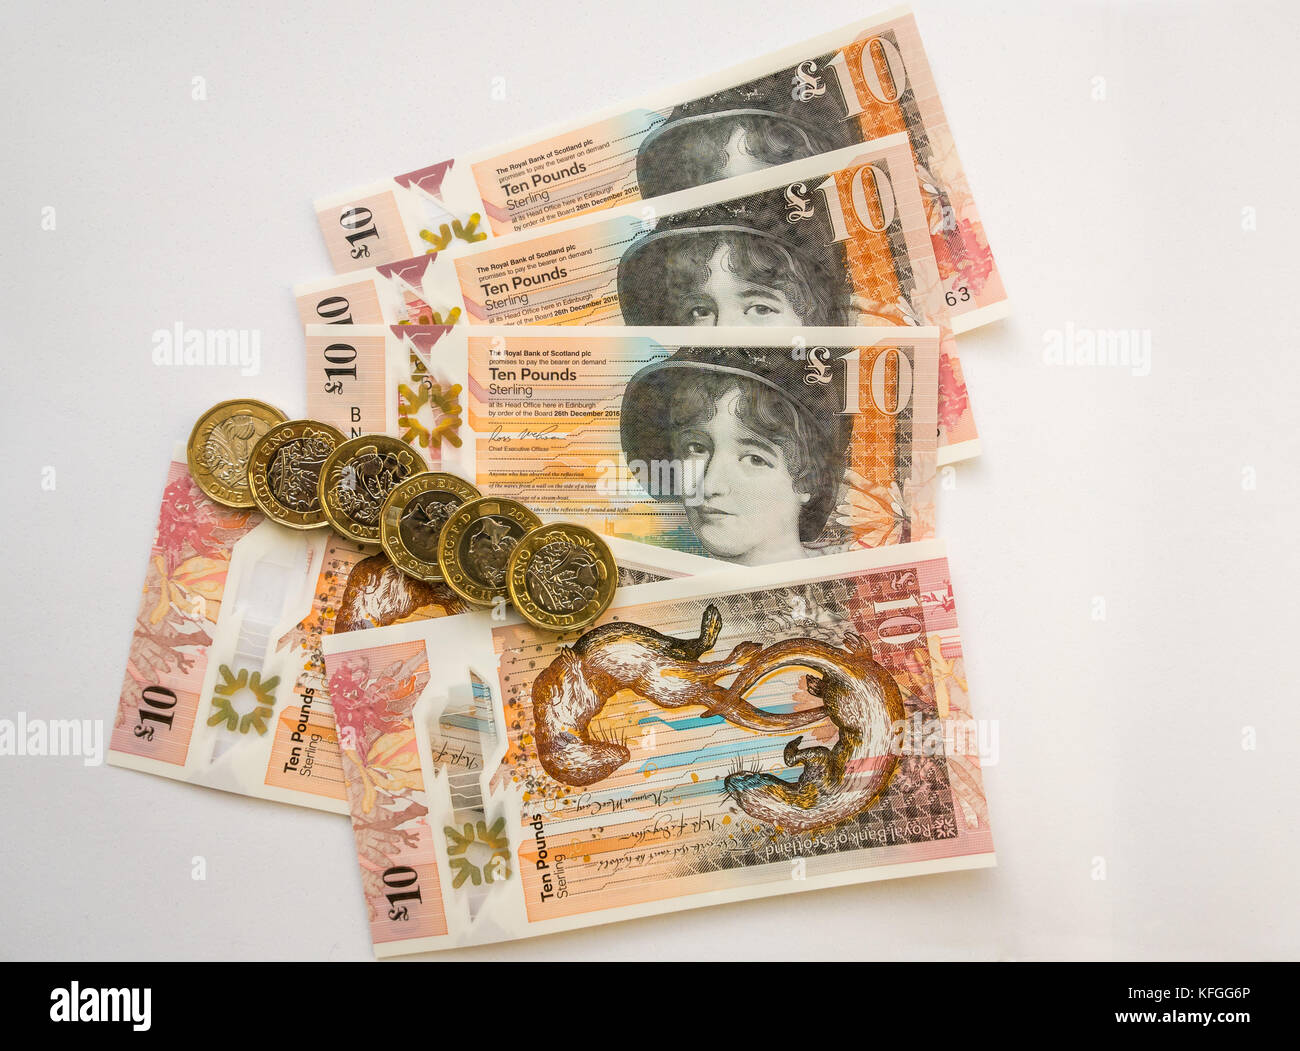 Royal Bank of Scotland neue Kunststoff Polymer zehn Pfund £ 10 Banknoten- und neuen sechseckigen ein Pfund £ 1 Münzen, auf einem weißen Hintergrund Stockfoto